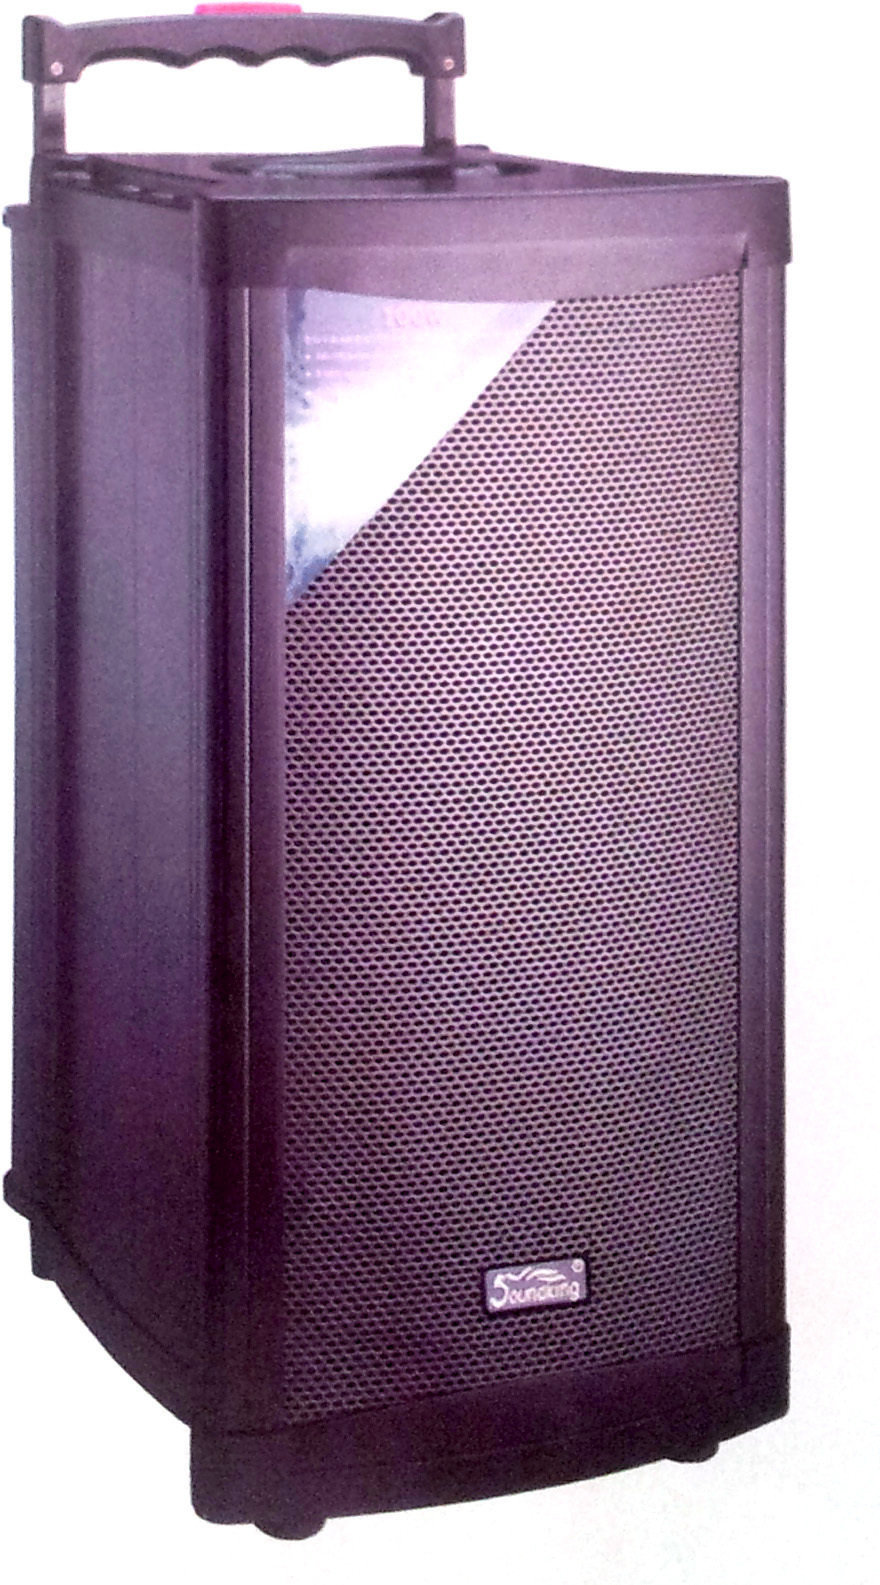 Sistema de megafonía alimentado por batería Soundking W208PAD